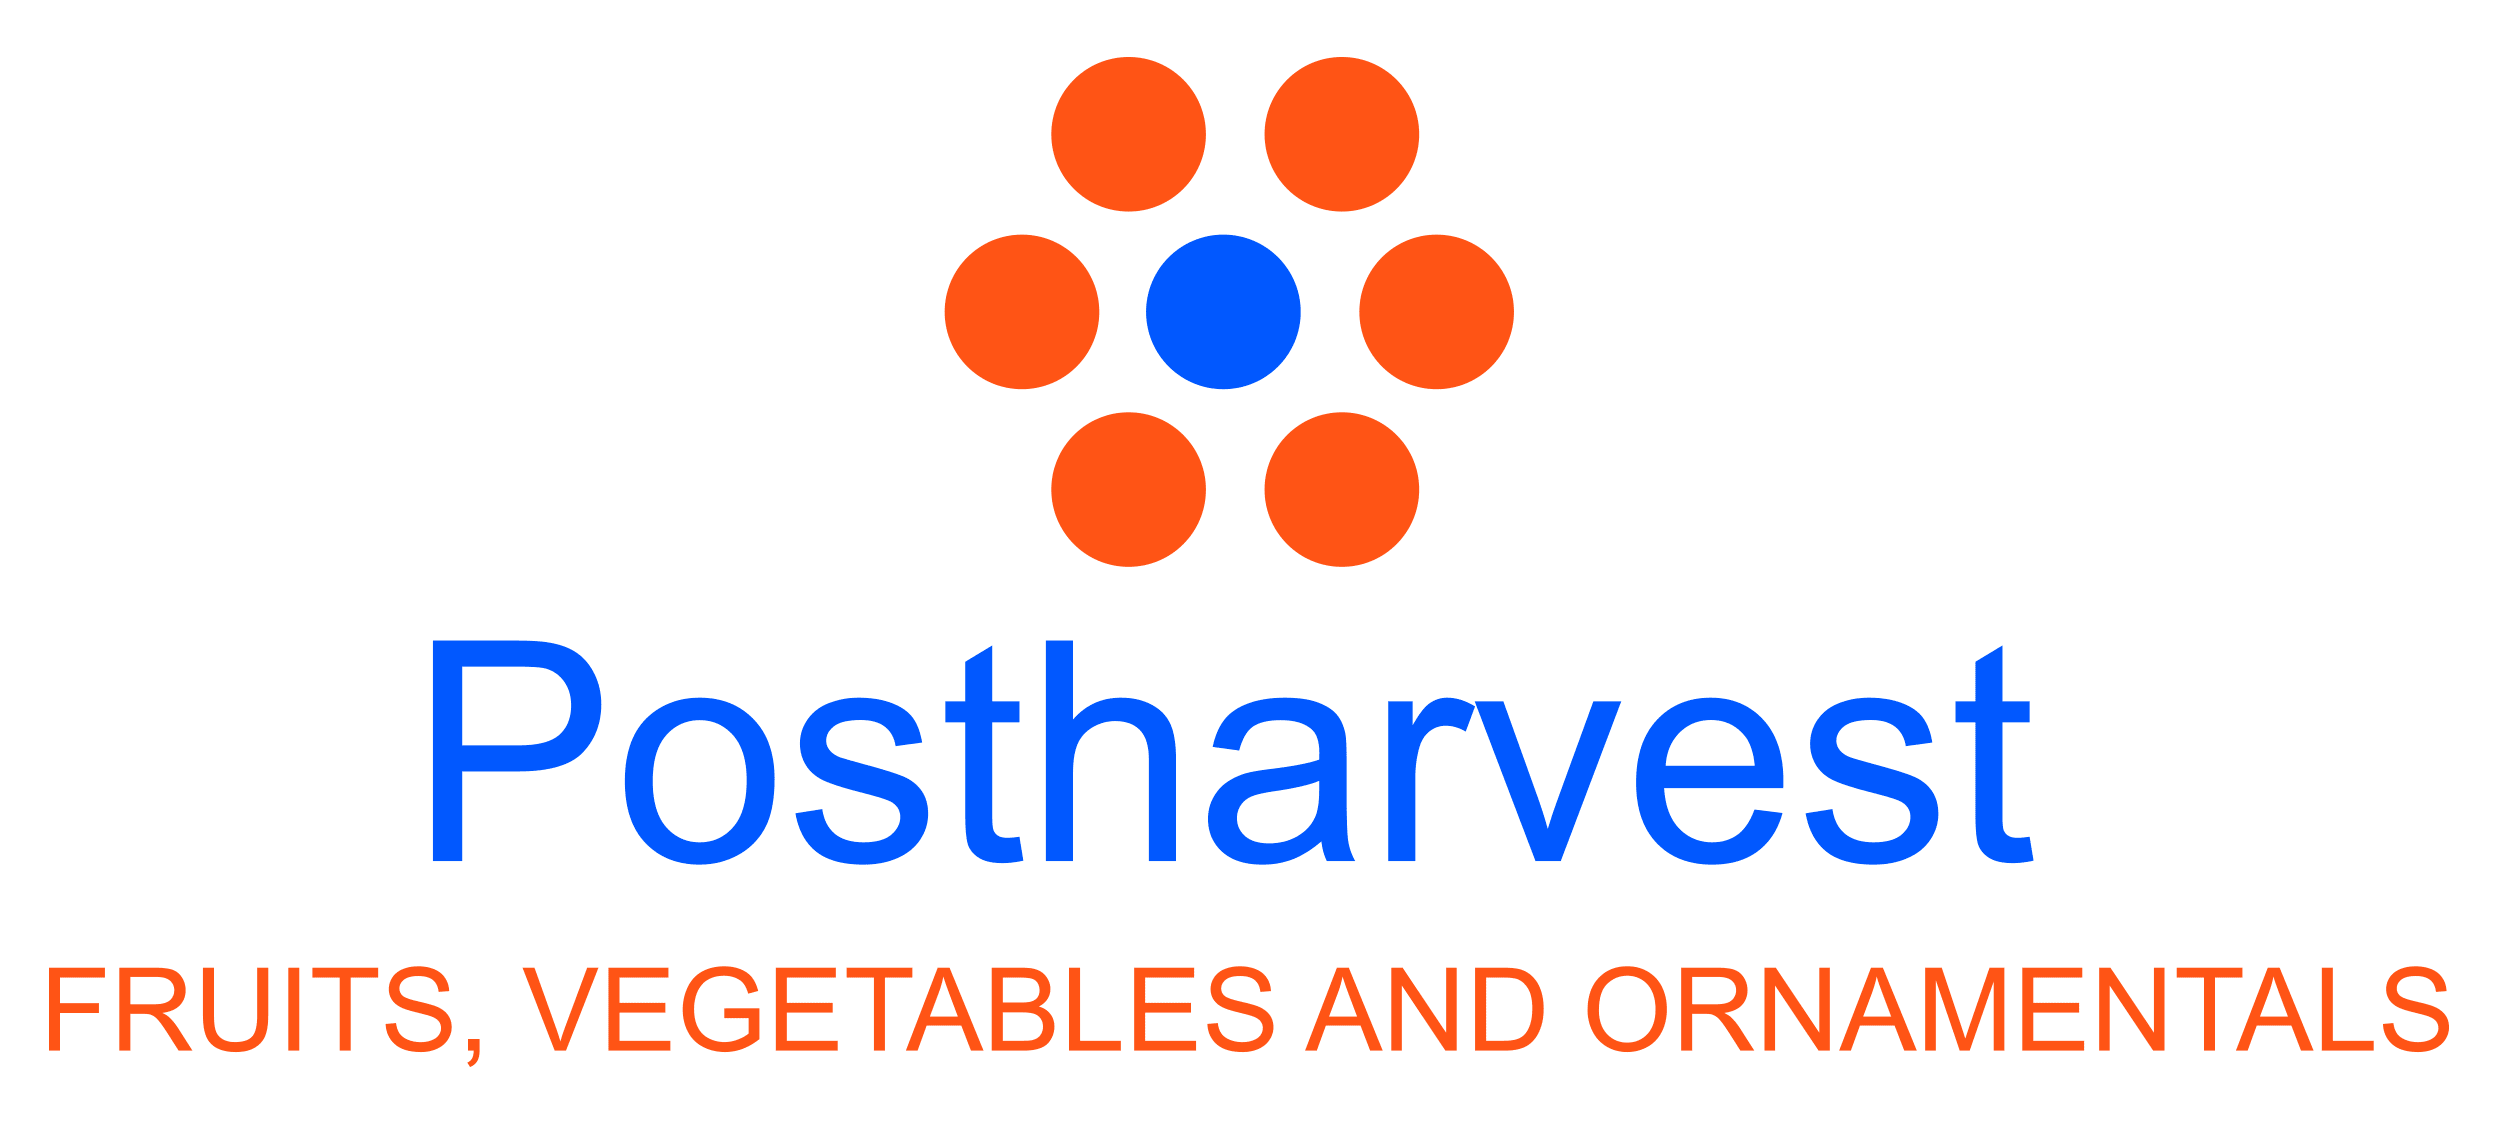 Postharvest logo